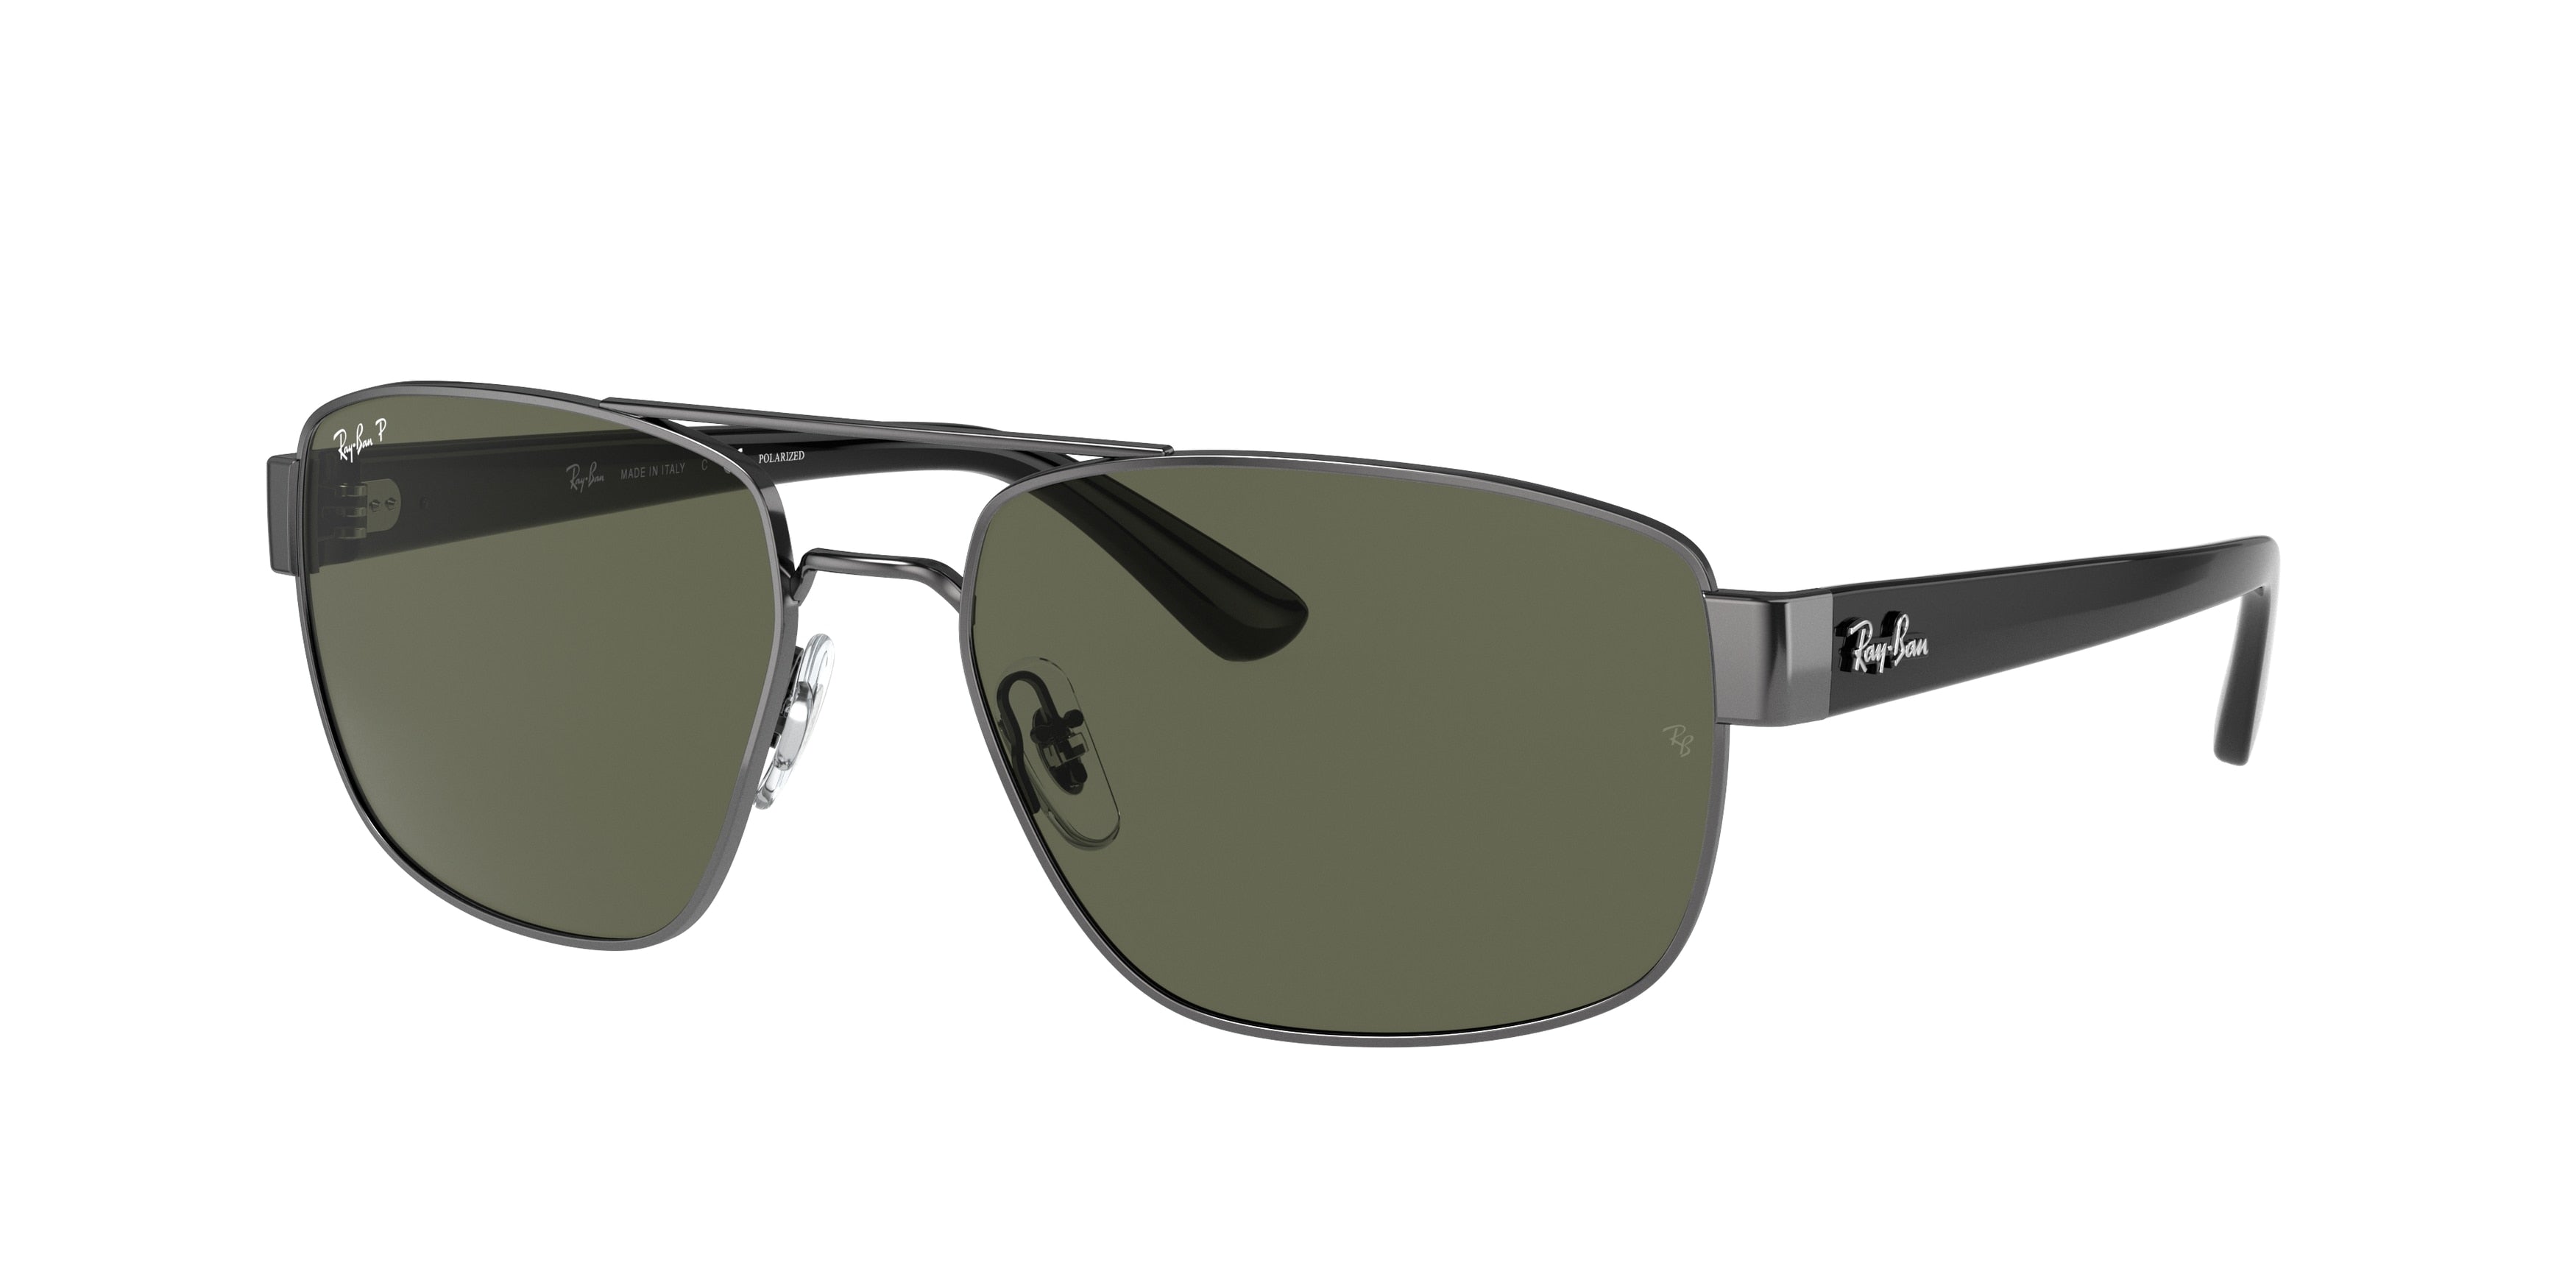 Ray-Ban RB3663 Irregular Sunglasses  004/58-Gunmetal 59-140-17 - Color Map Grey